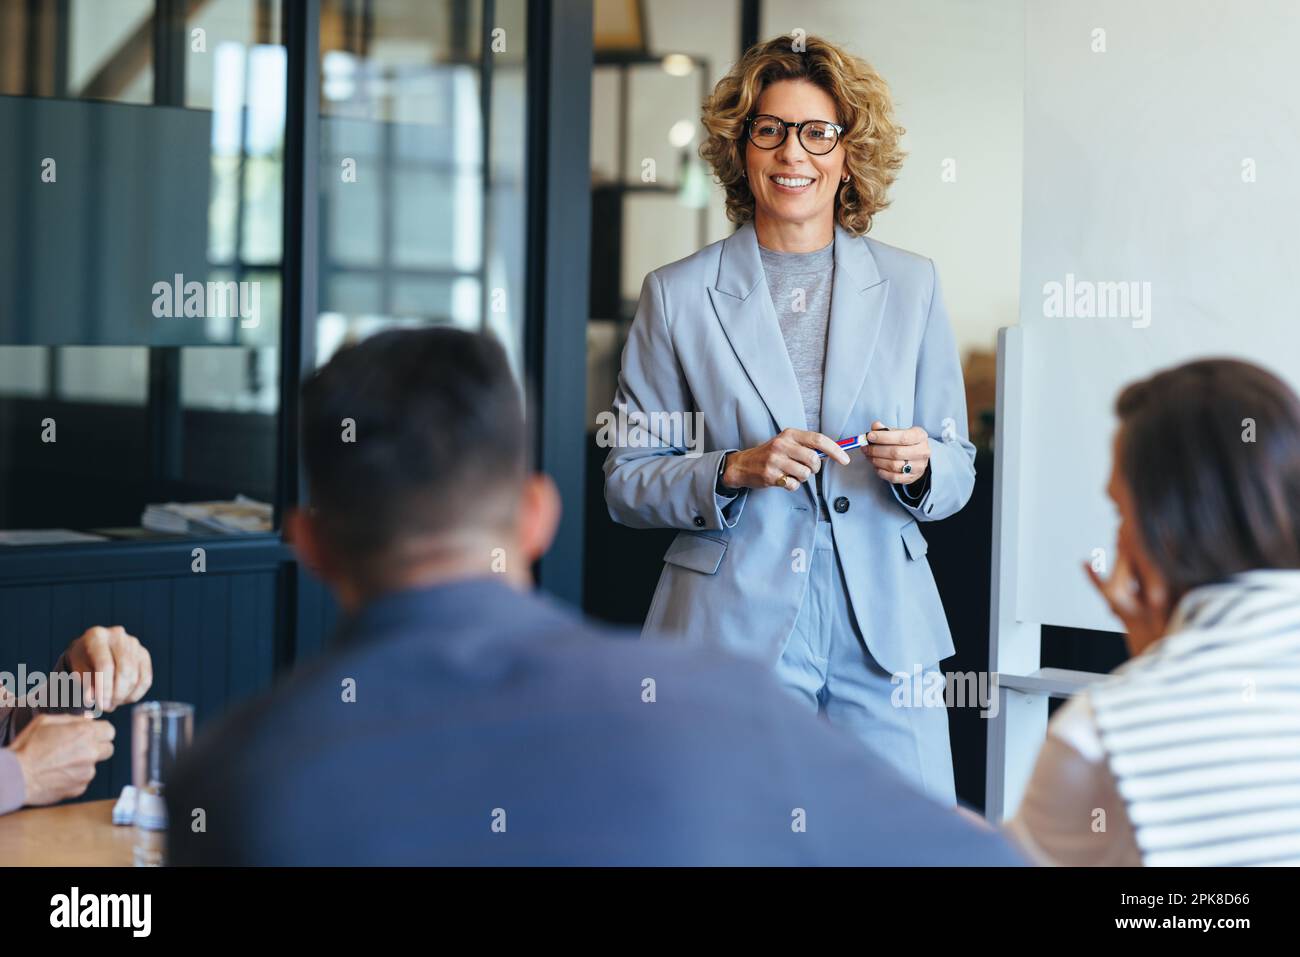 Femme d'affaires mature ayant une discussion avec son équipe. Femme dirigeant une réunion dans un bureau. femme d'affaires présentant ses idées dans un bureau. Groupe Banque D'Images